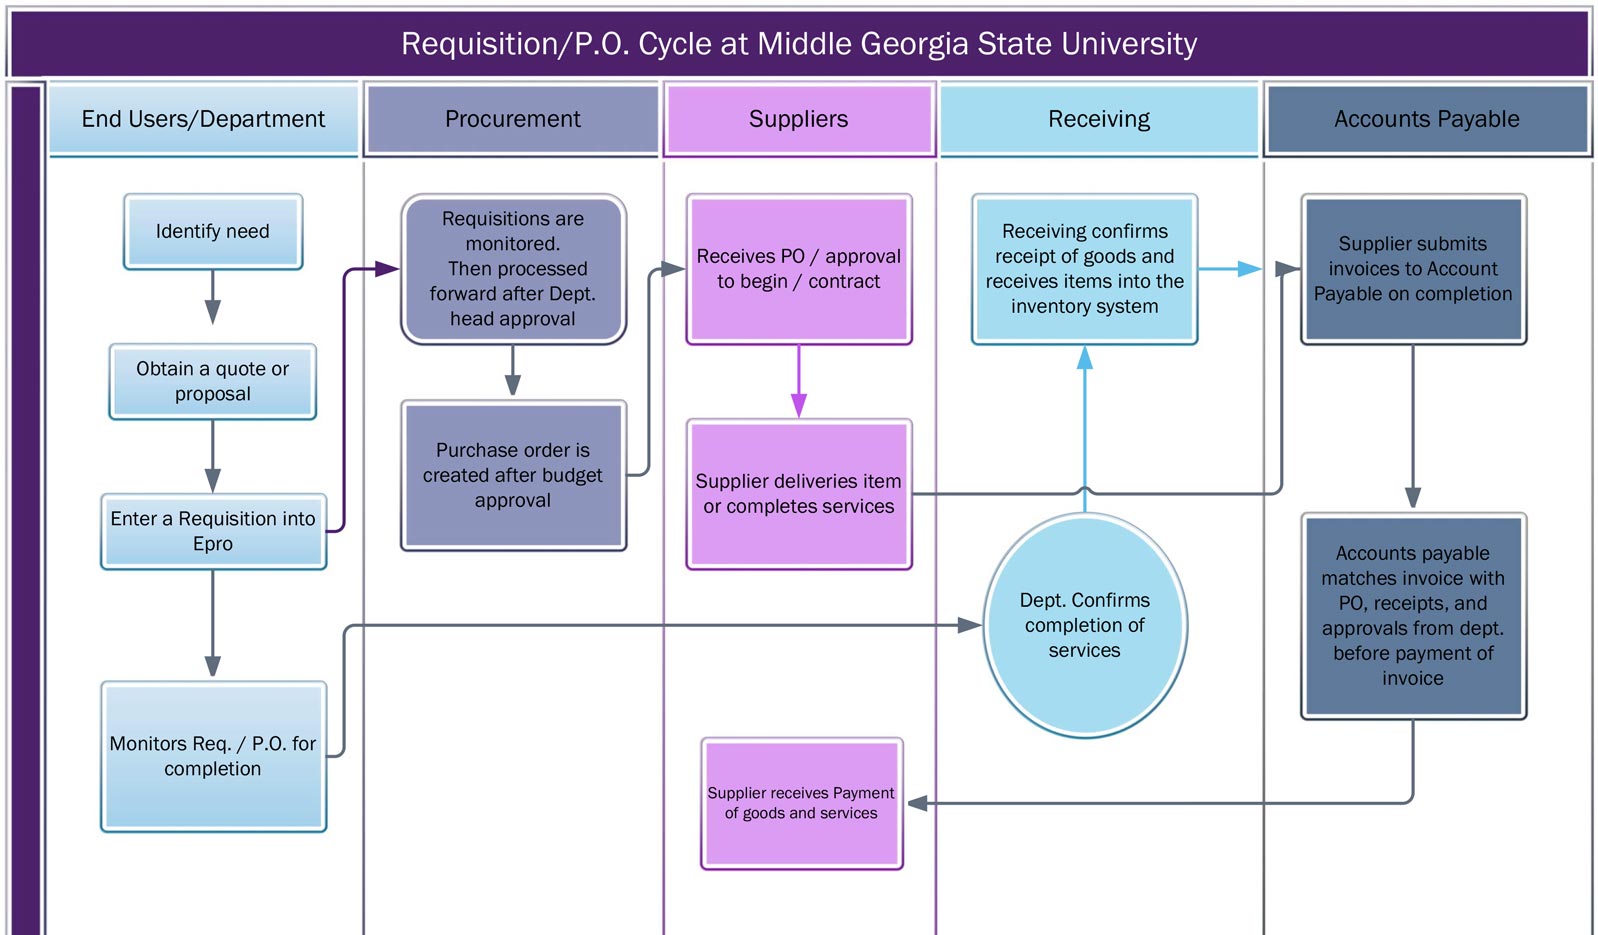 Requisition/P.O. Cycle at MGA